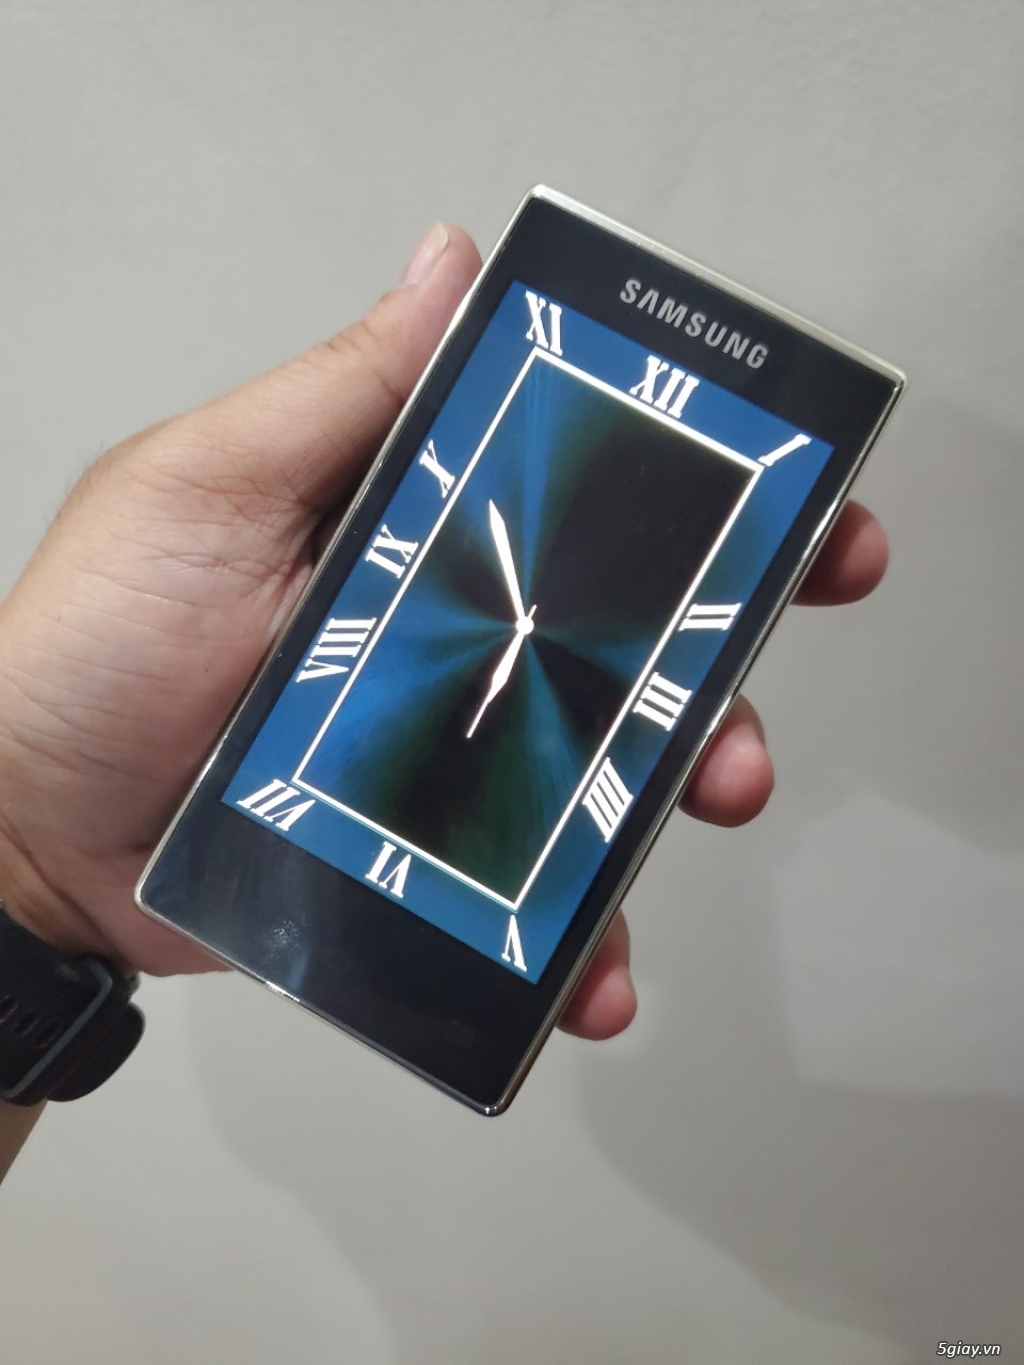 Hàng độc: Samsung G9198 nắp gập 2 màn hình đời cuối màu xanh siêu đẹp - 1